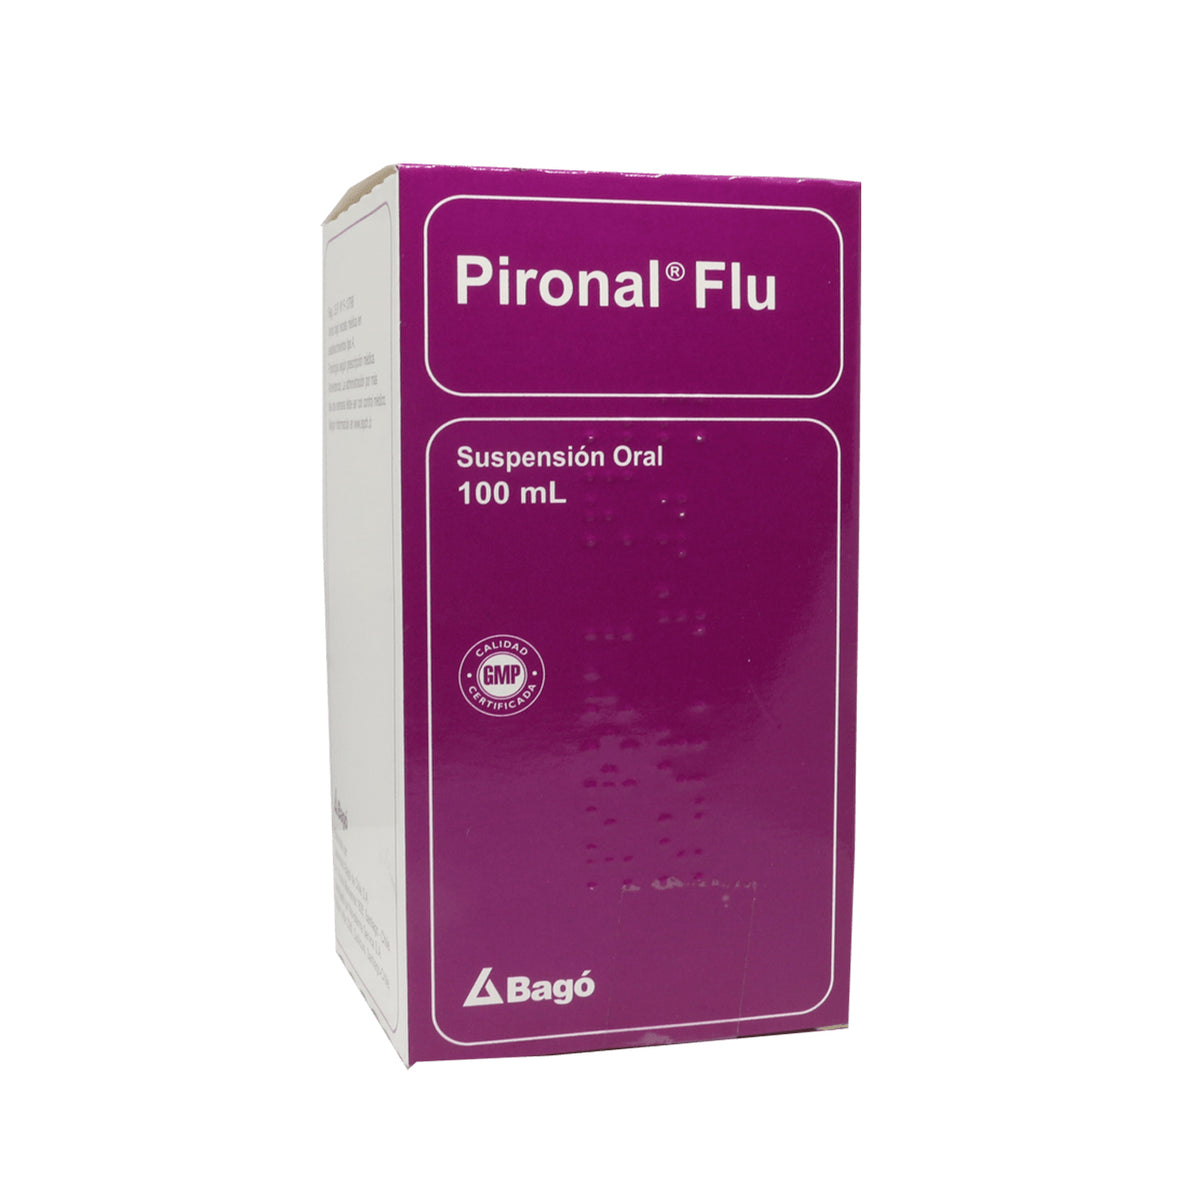 Pironal Flu Suspensión Oral